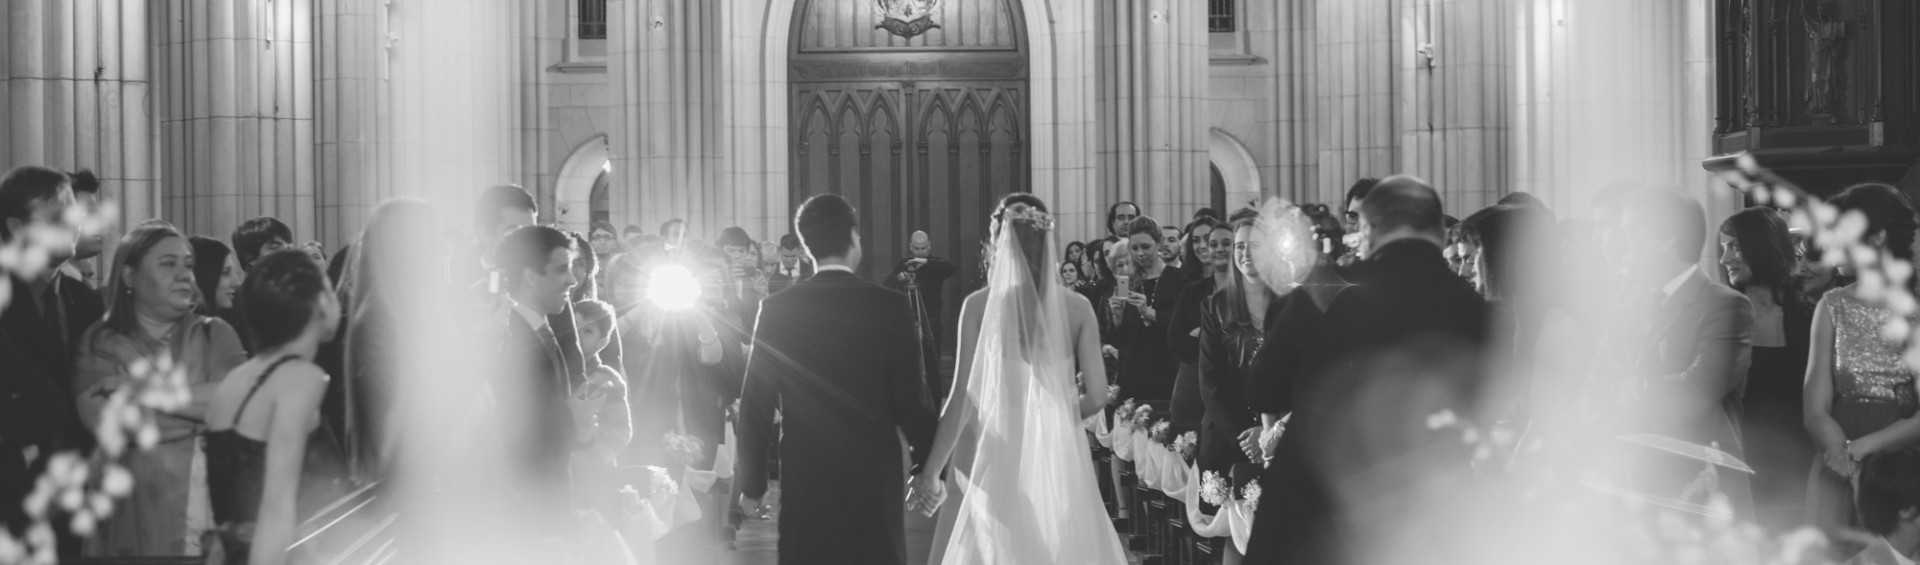 wedding ceremony photography, fotografia de bodas ceremonia iglesia